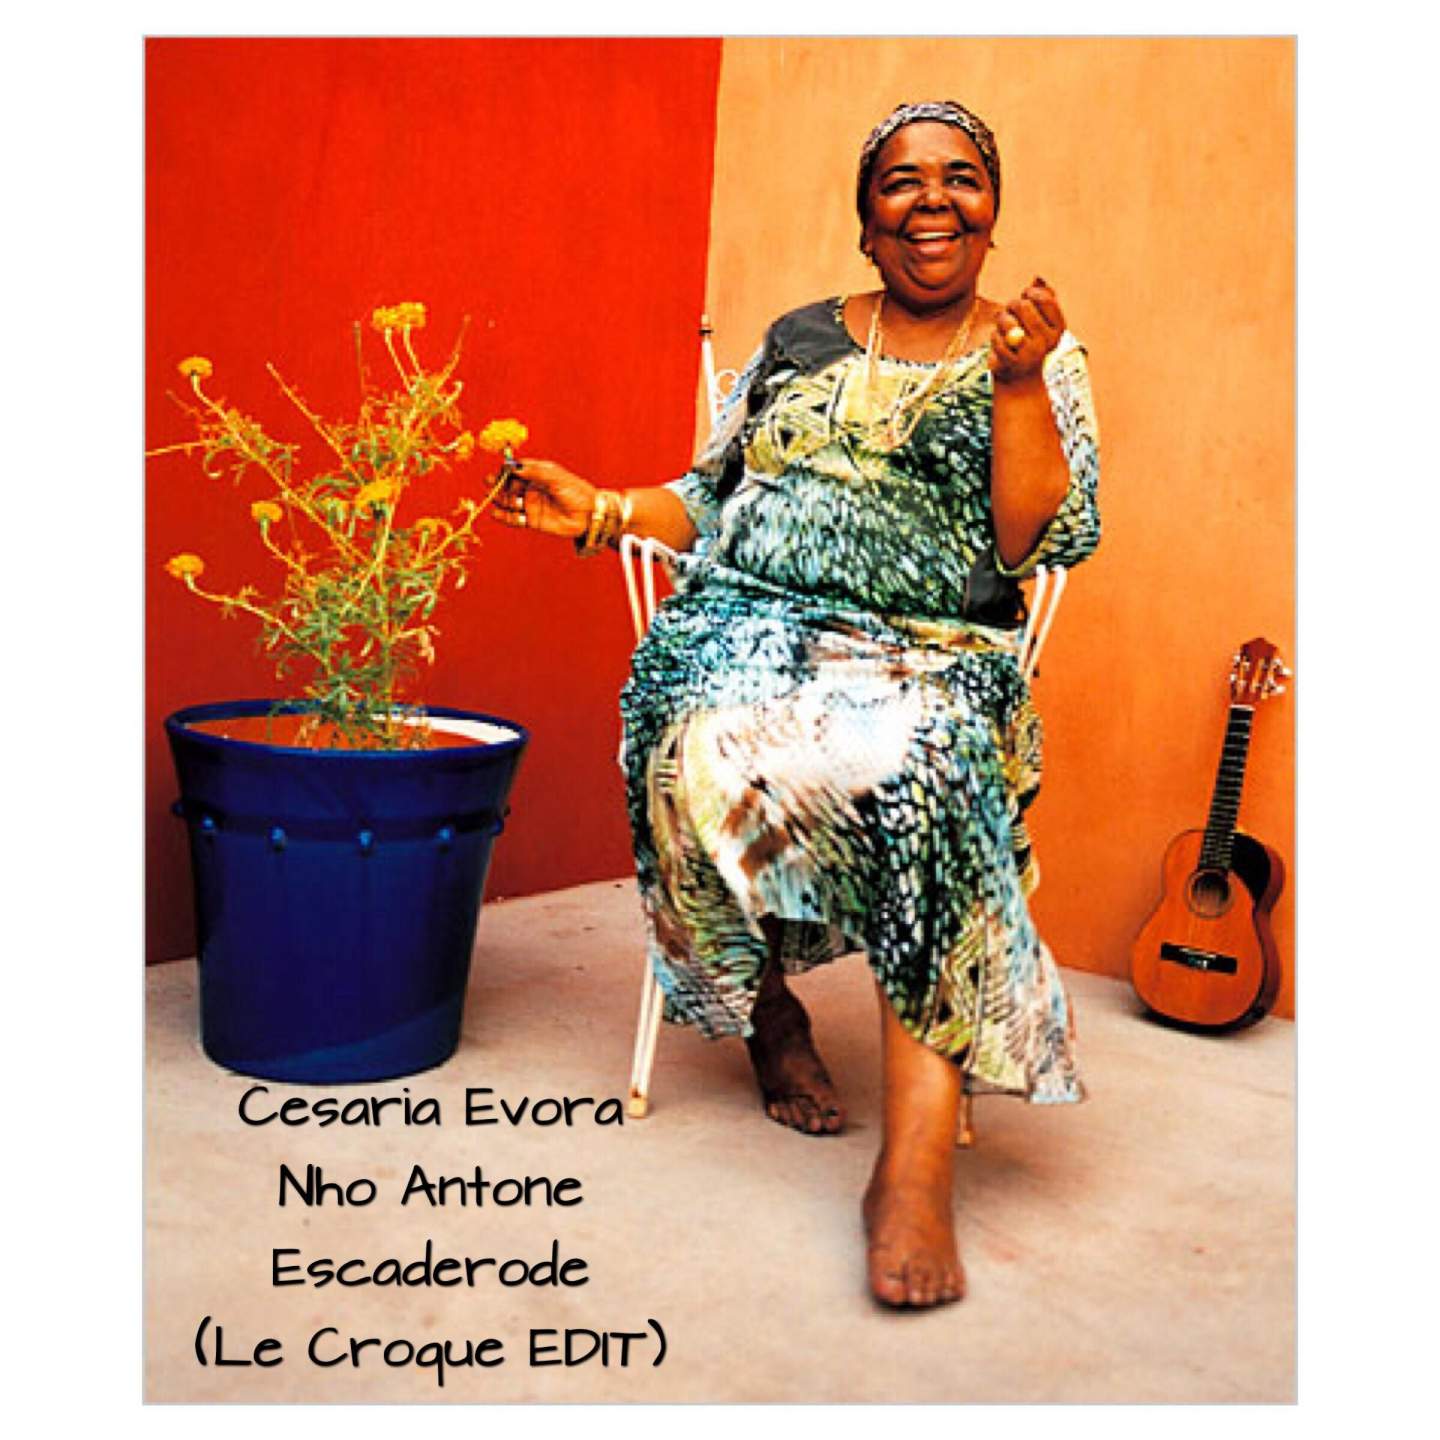 Nho Antone Escaderode feat. Cesaria Evora (Le Croque edit) -
                    Luxe radio